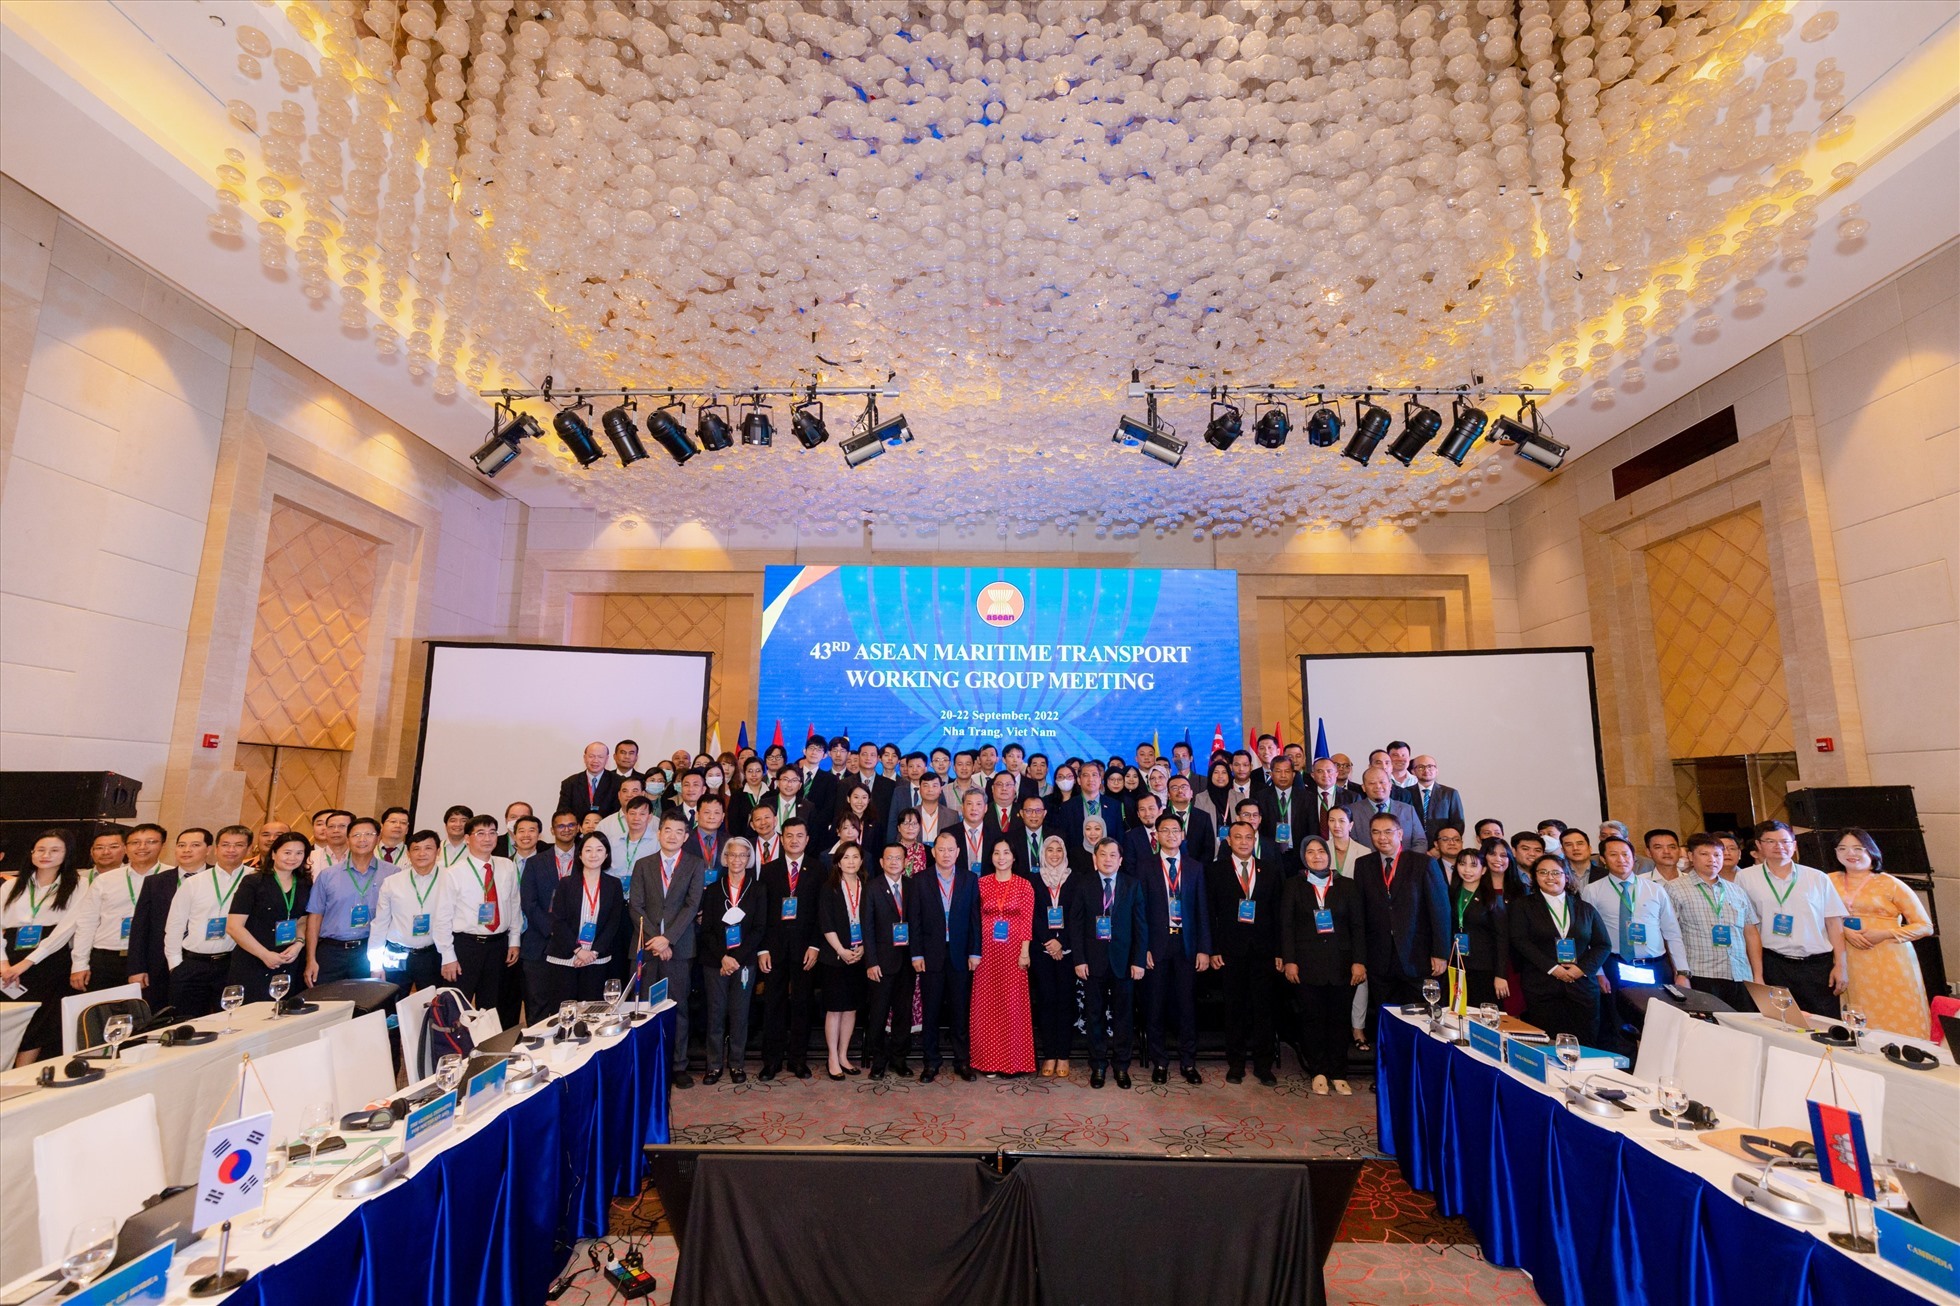 Hội nghị Nhóm công tác vận tải hàng hải ASEAN lần thứ 43 do Cục Hàng hải Việt Nam chủ trì được tổ chức tại Nha Trang, ngày 20.9.2022. Ảnh: Lâm Anh